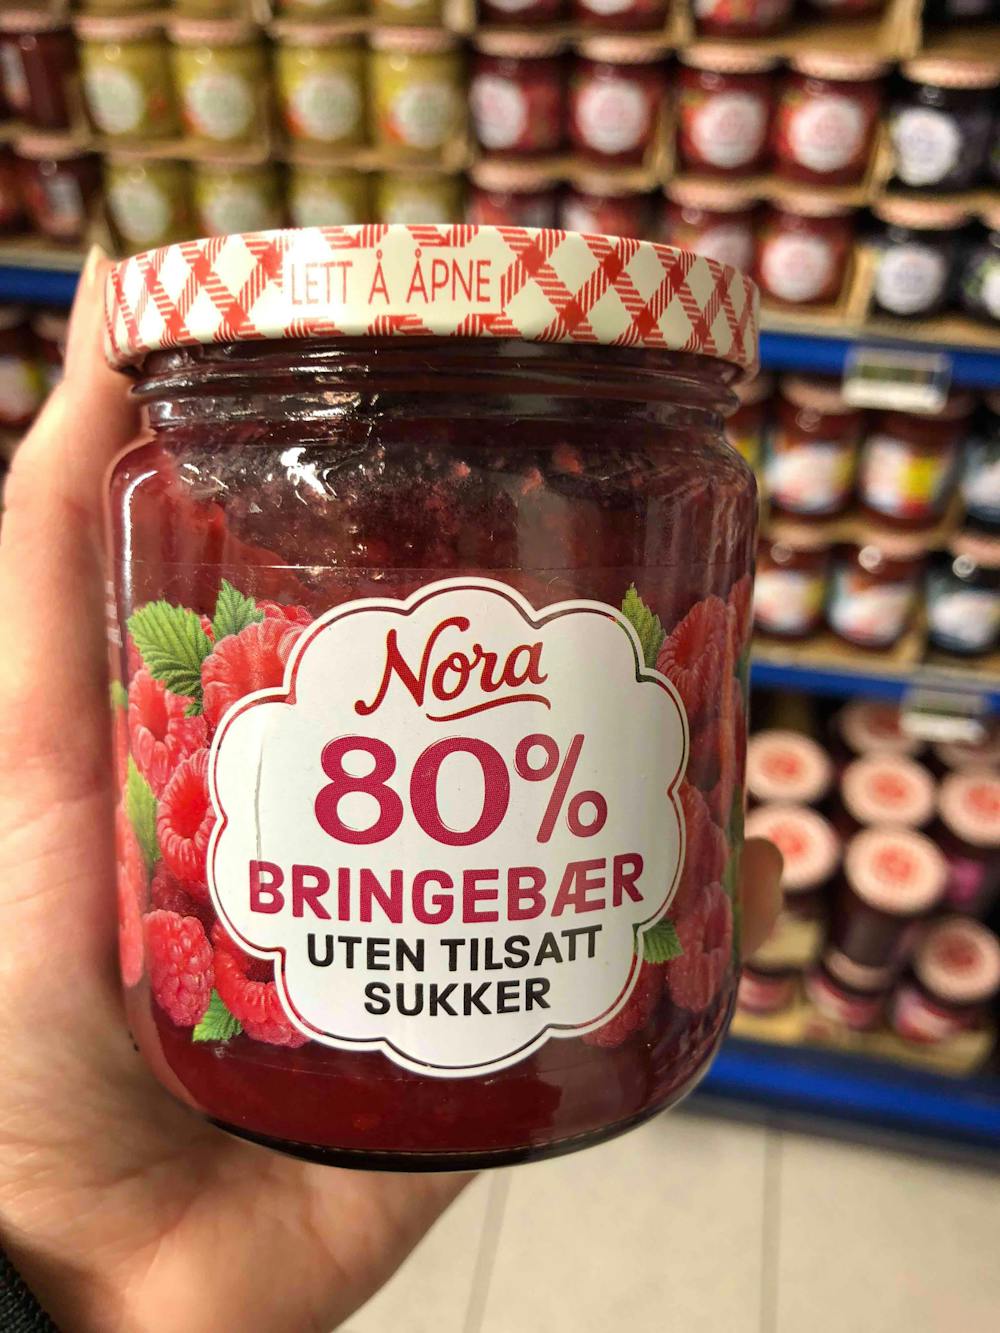 80% bringebær uten tilsatt sukker, Nora